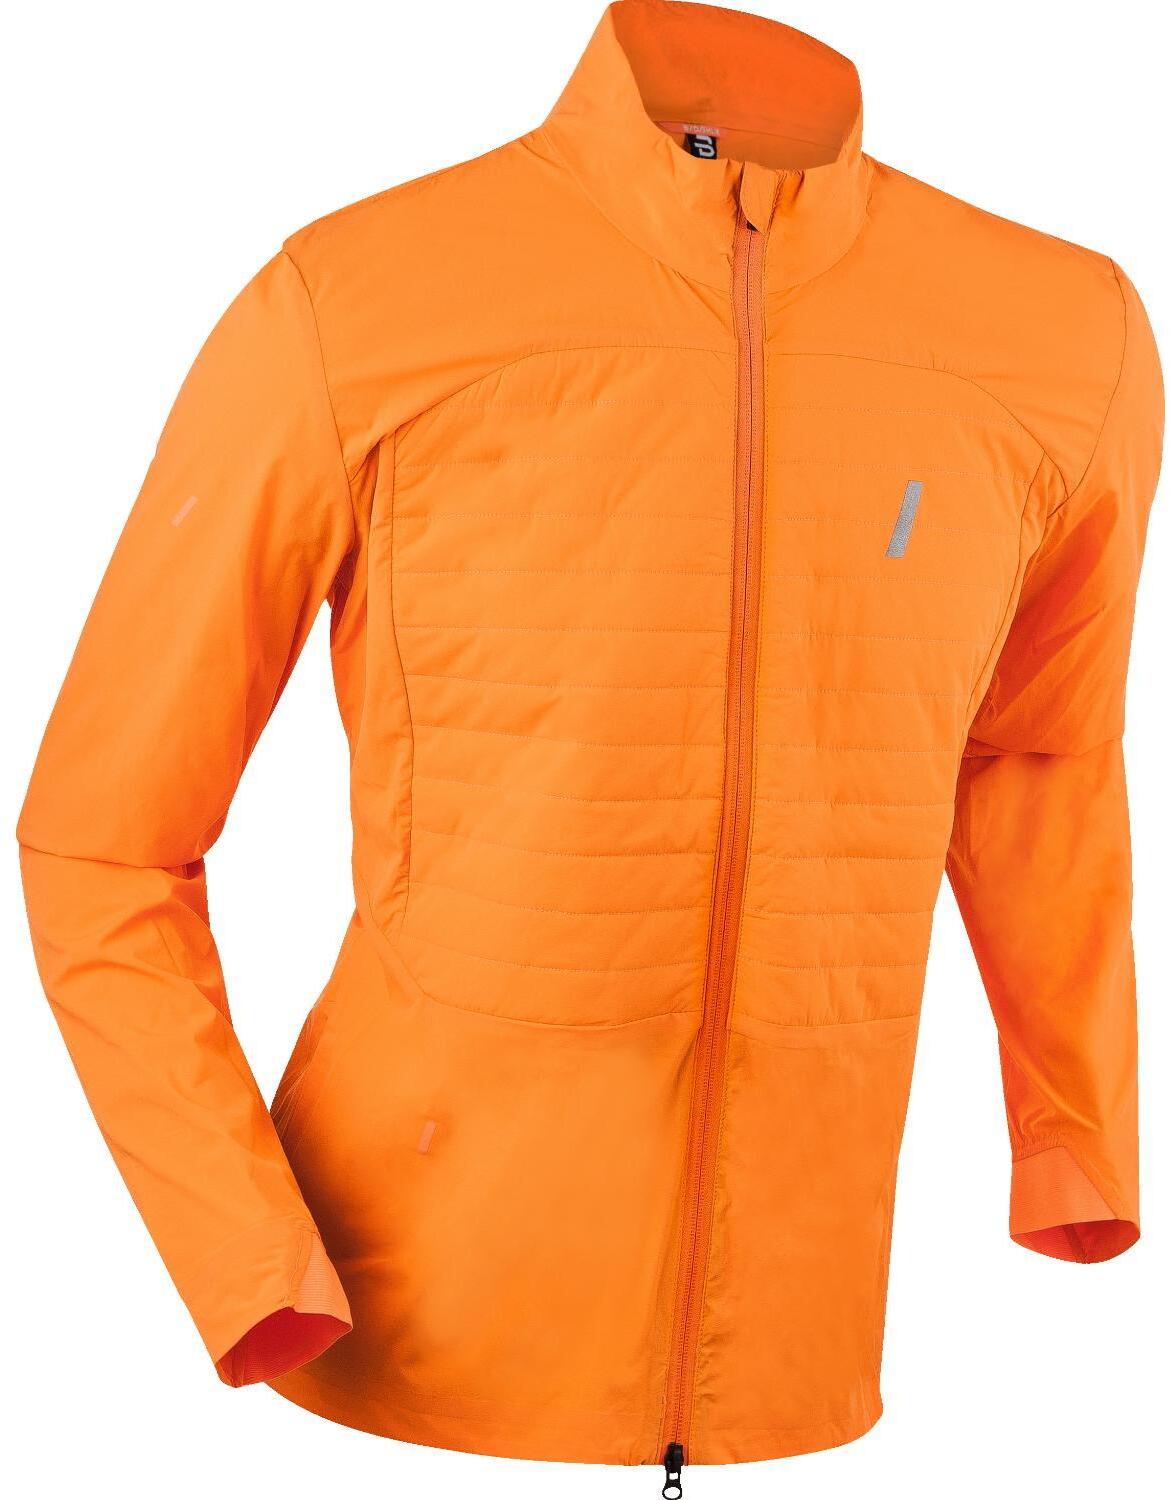 Куртка Bjorn Daehlie Winter Run for men Orange Popsicle